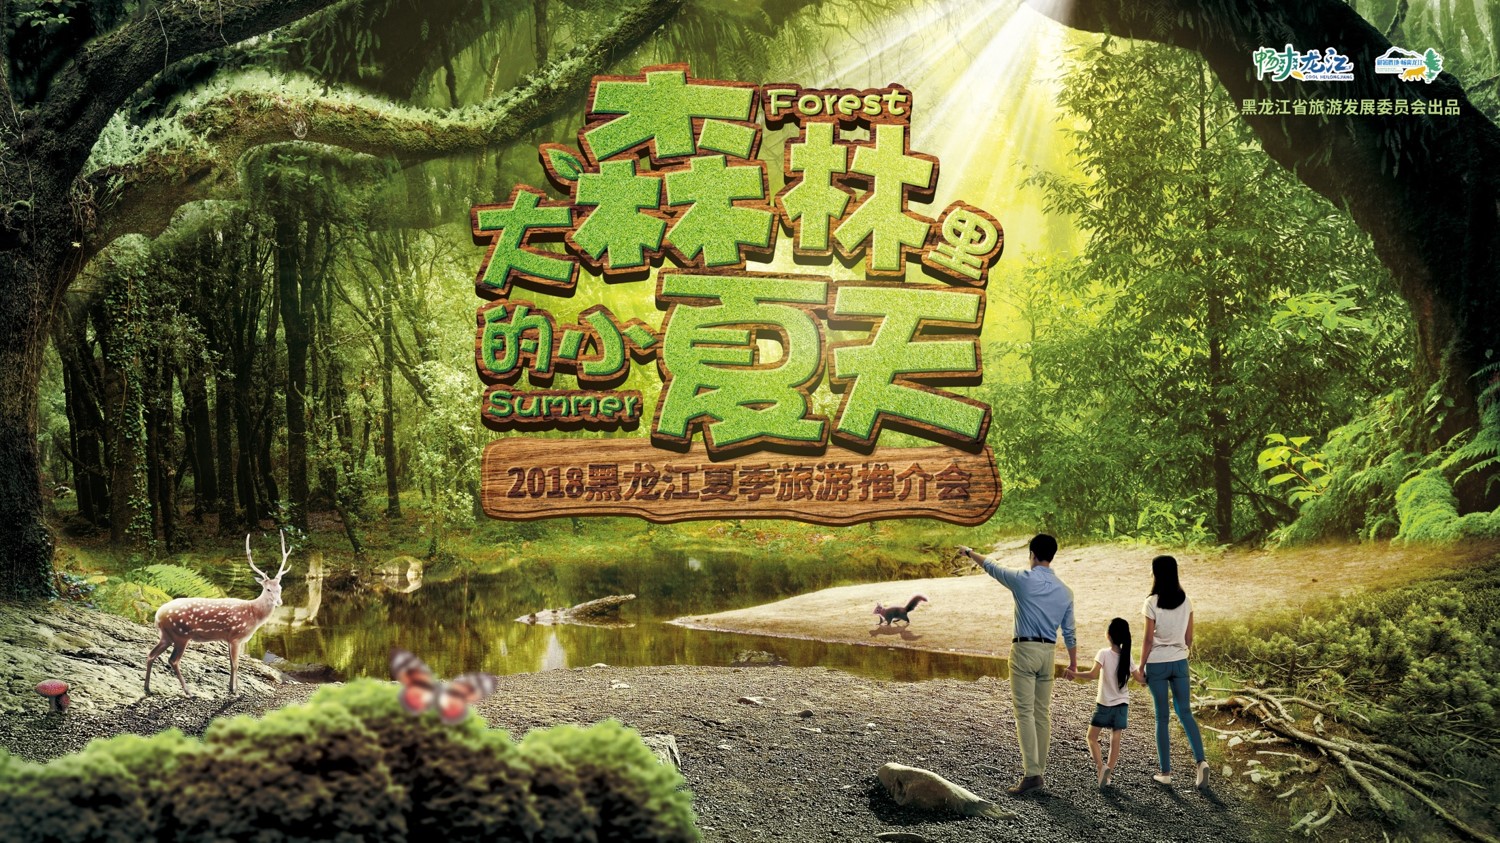 《大森林里的小夏天》北京首映 2018自驾旅游年暨环中国自驾极致之旅正式启动